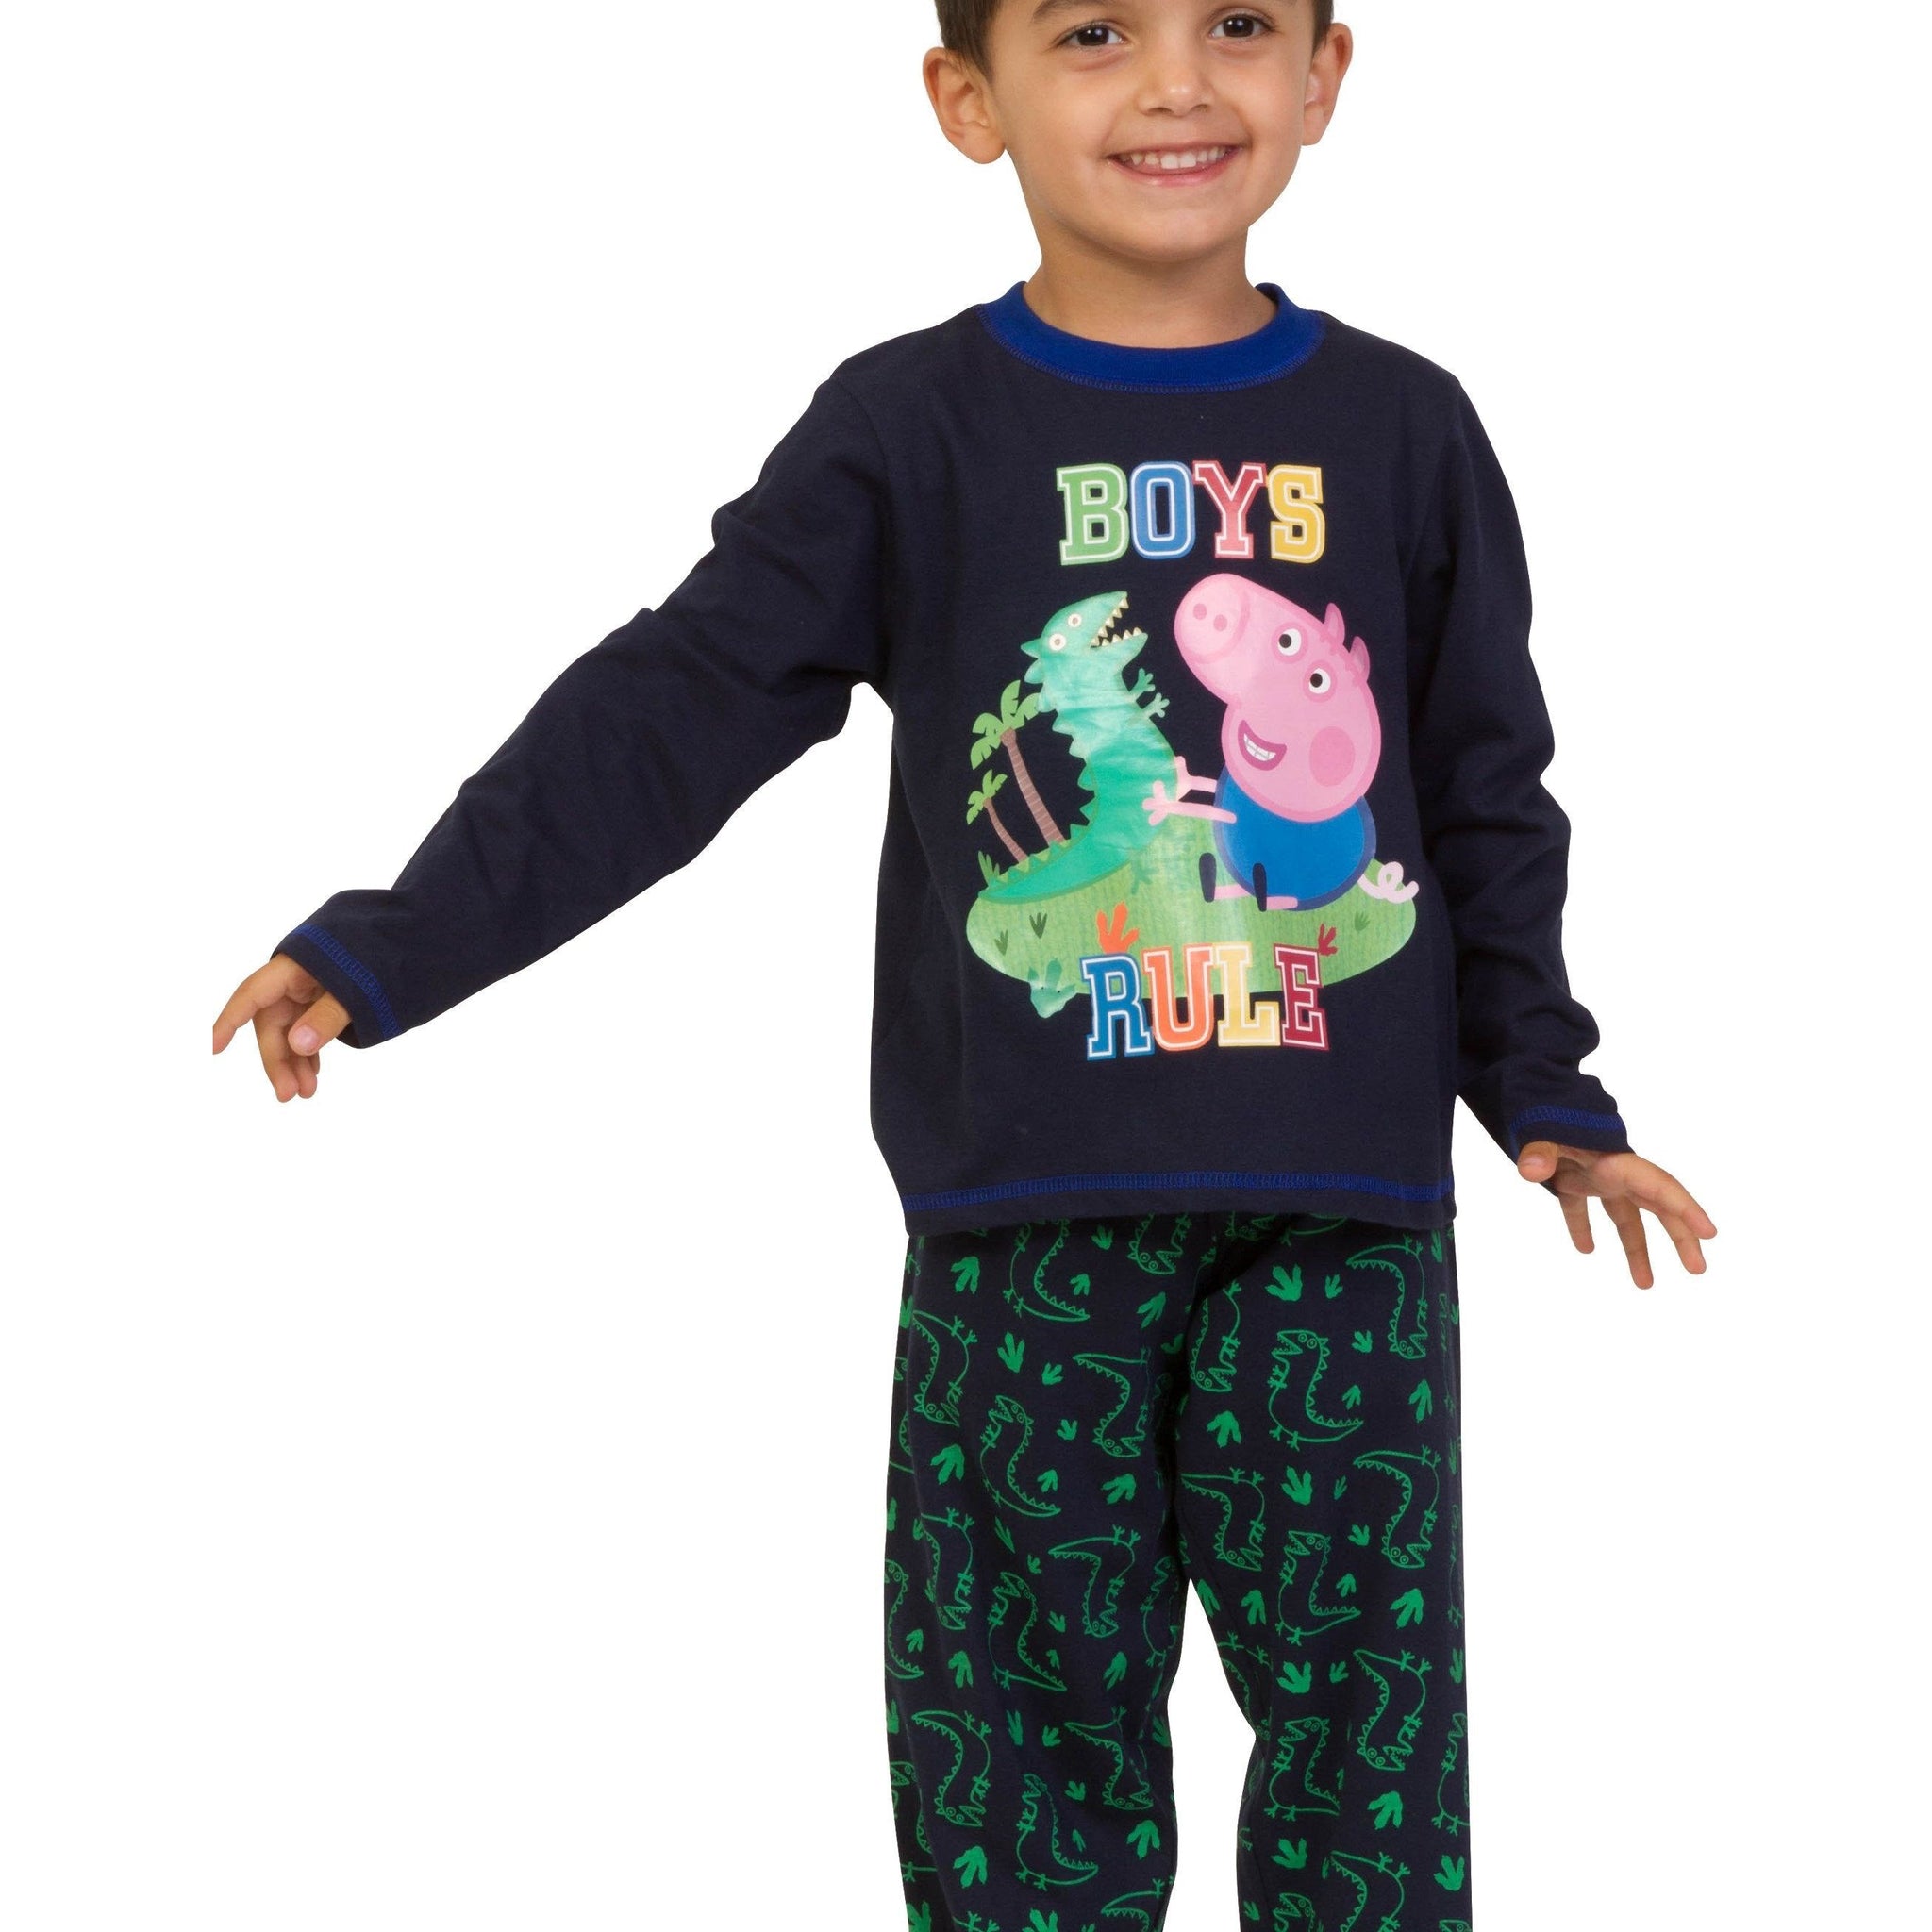 Boys Peppa Pig 'Boys Rule' Long Pyjamas - Pyjamas.com